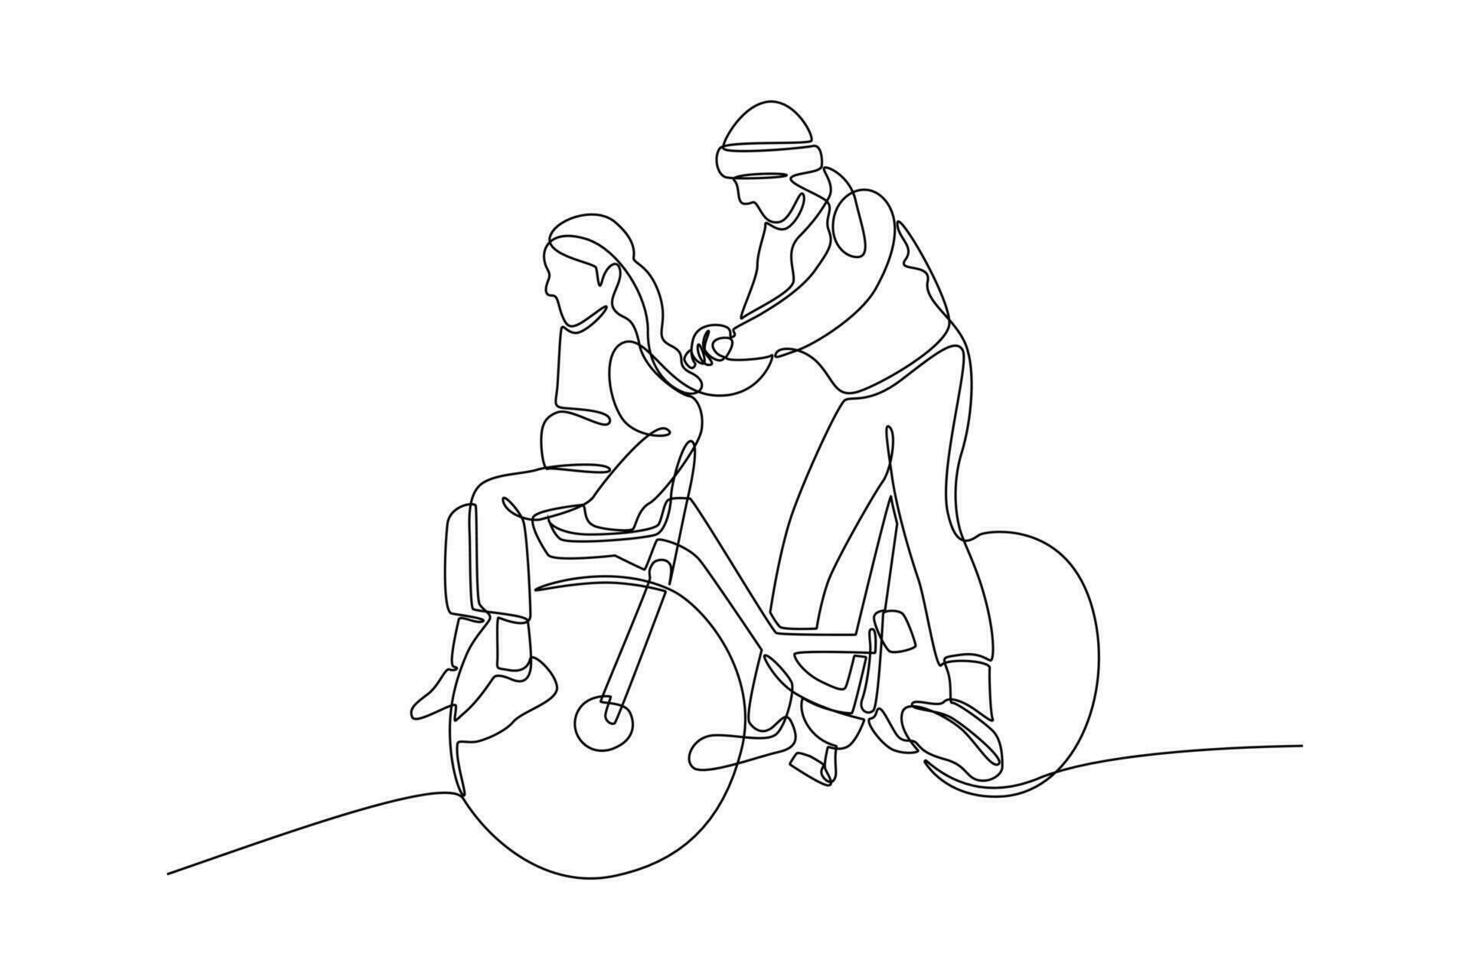 doorlopend een lijn tekening gelukkig ouders met haar kind rijden fiets samen. vector illustratie.